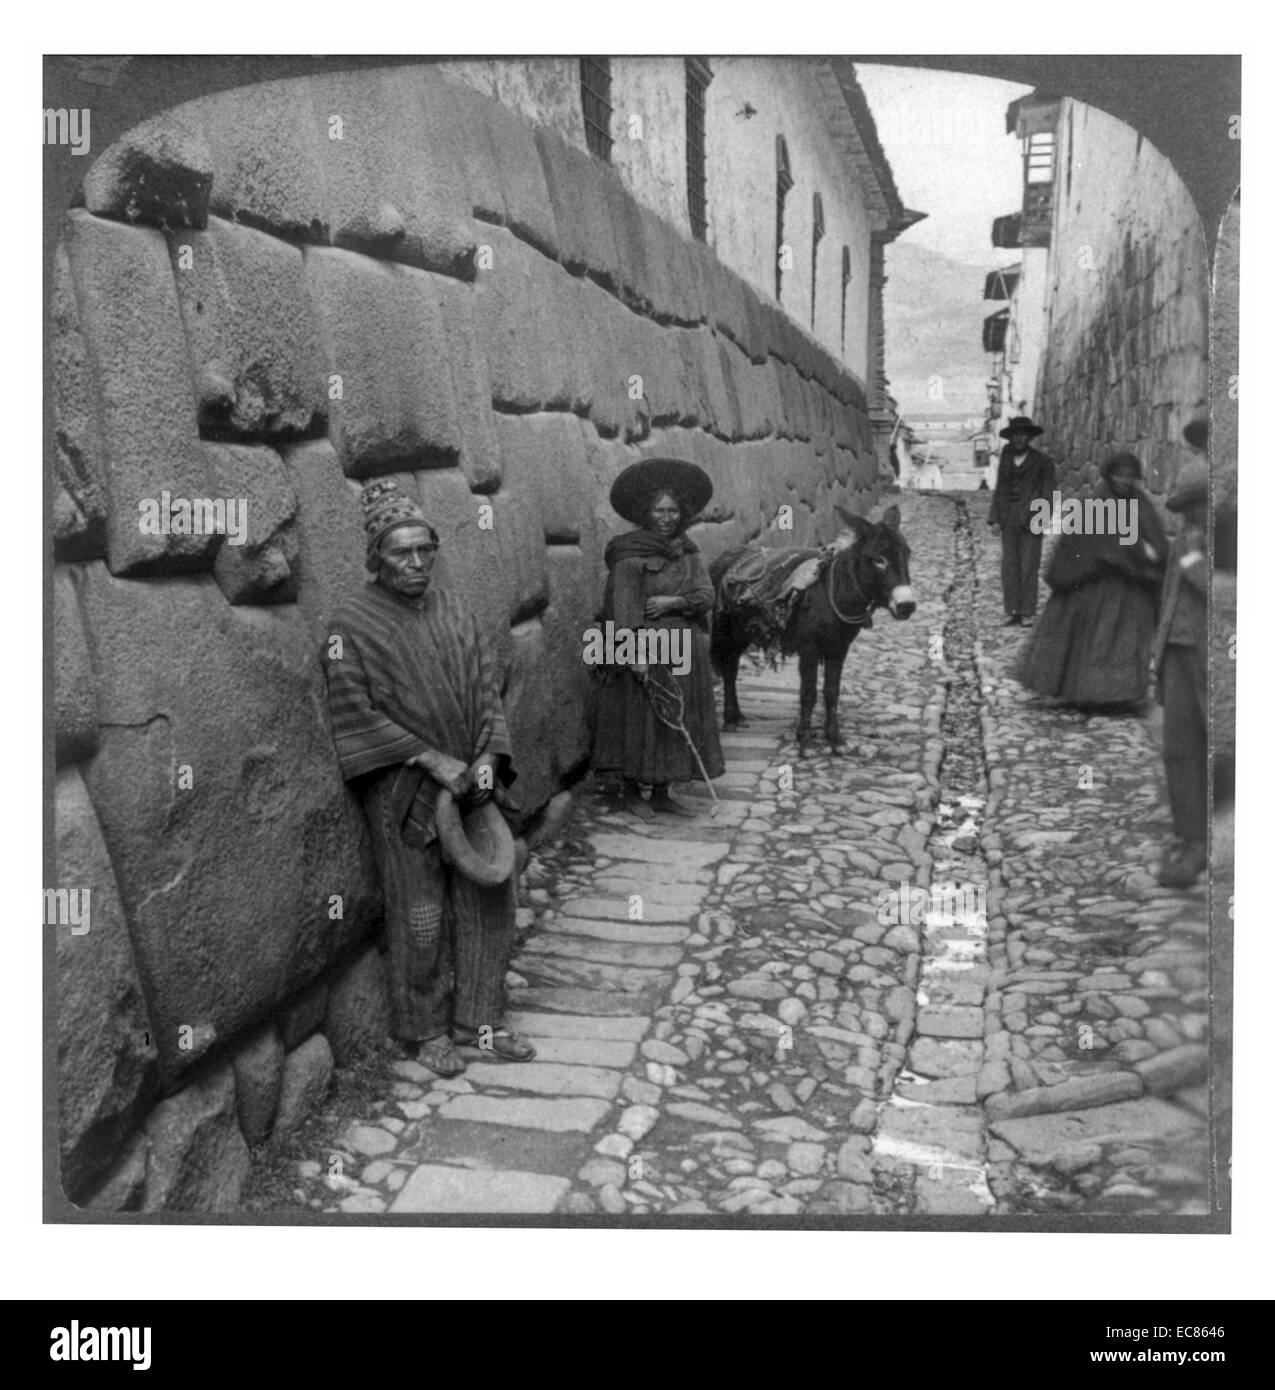 Foto von Mauerwerk der alten Inkas, ohne Werkzeuge oder Mörtel, Triumph Street, Cuzco, Peru gelegt. 1906 datiert. Stockfoto